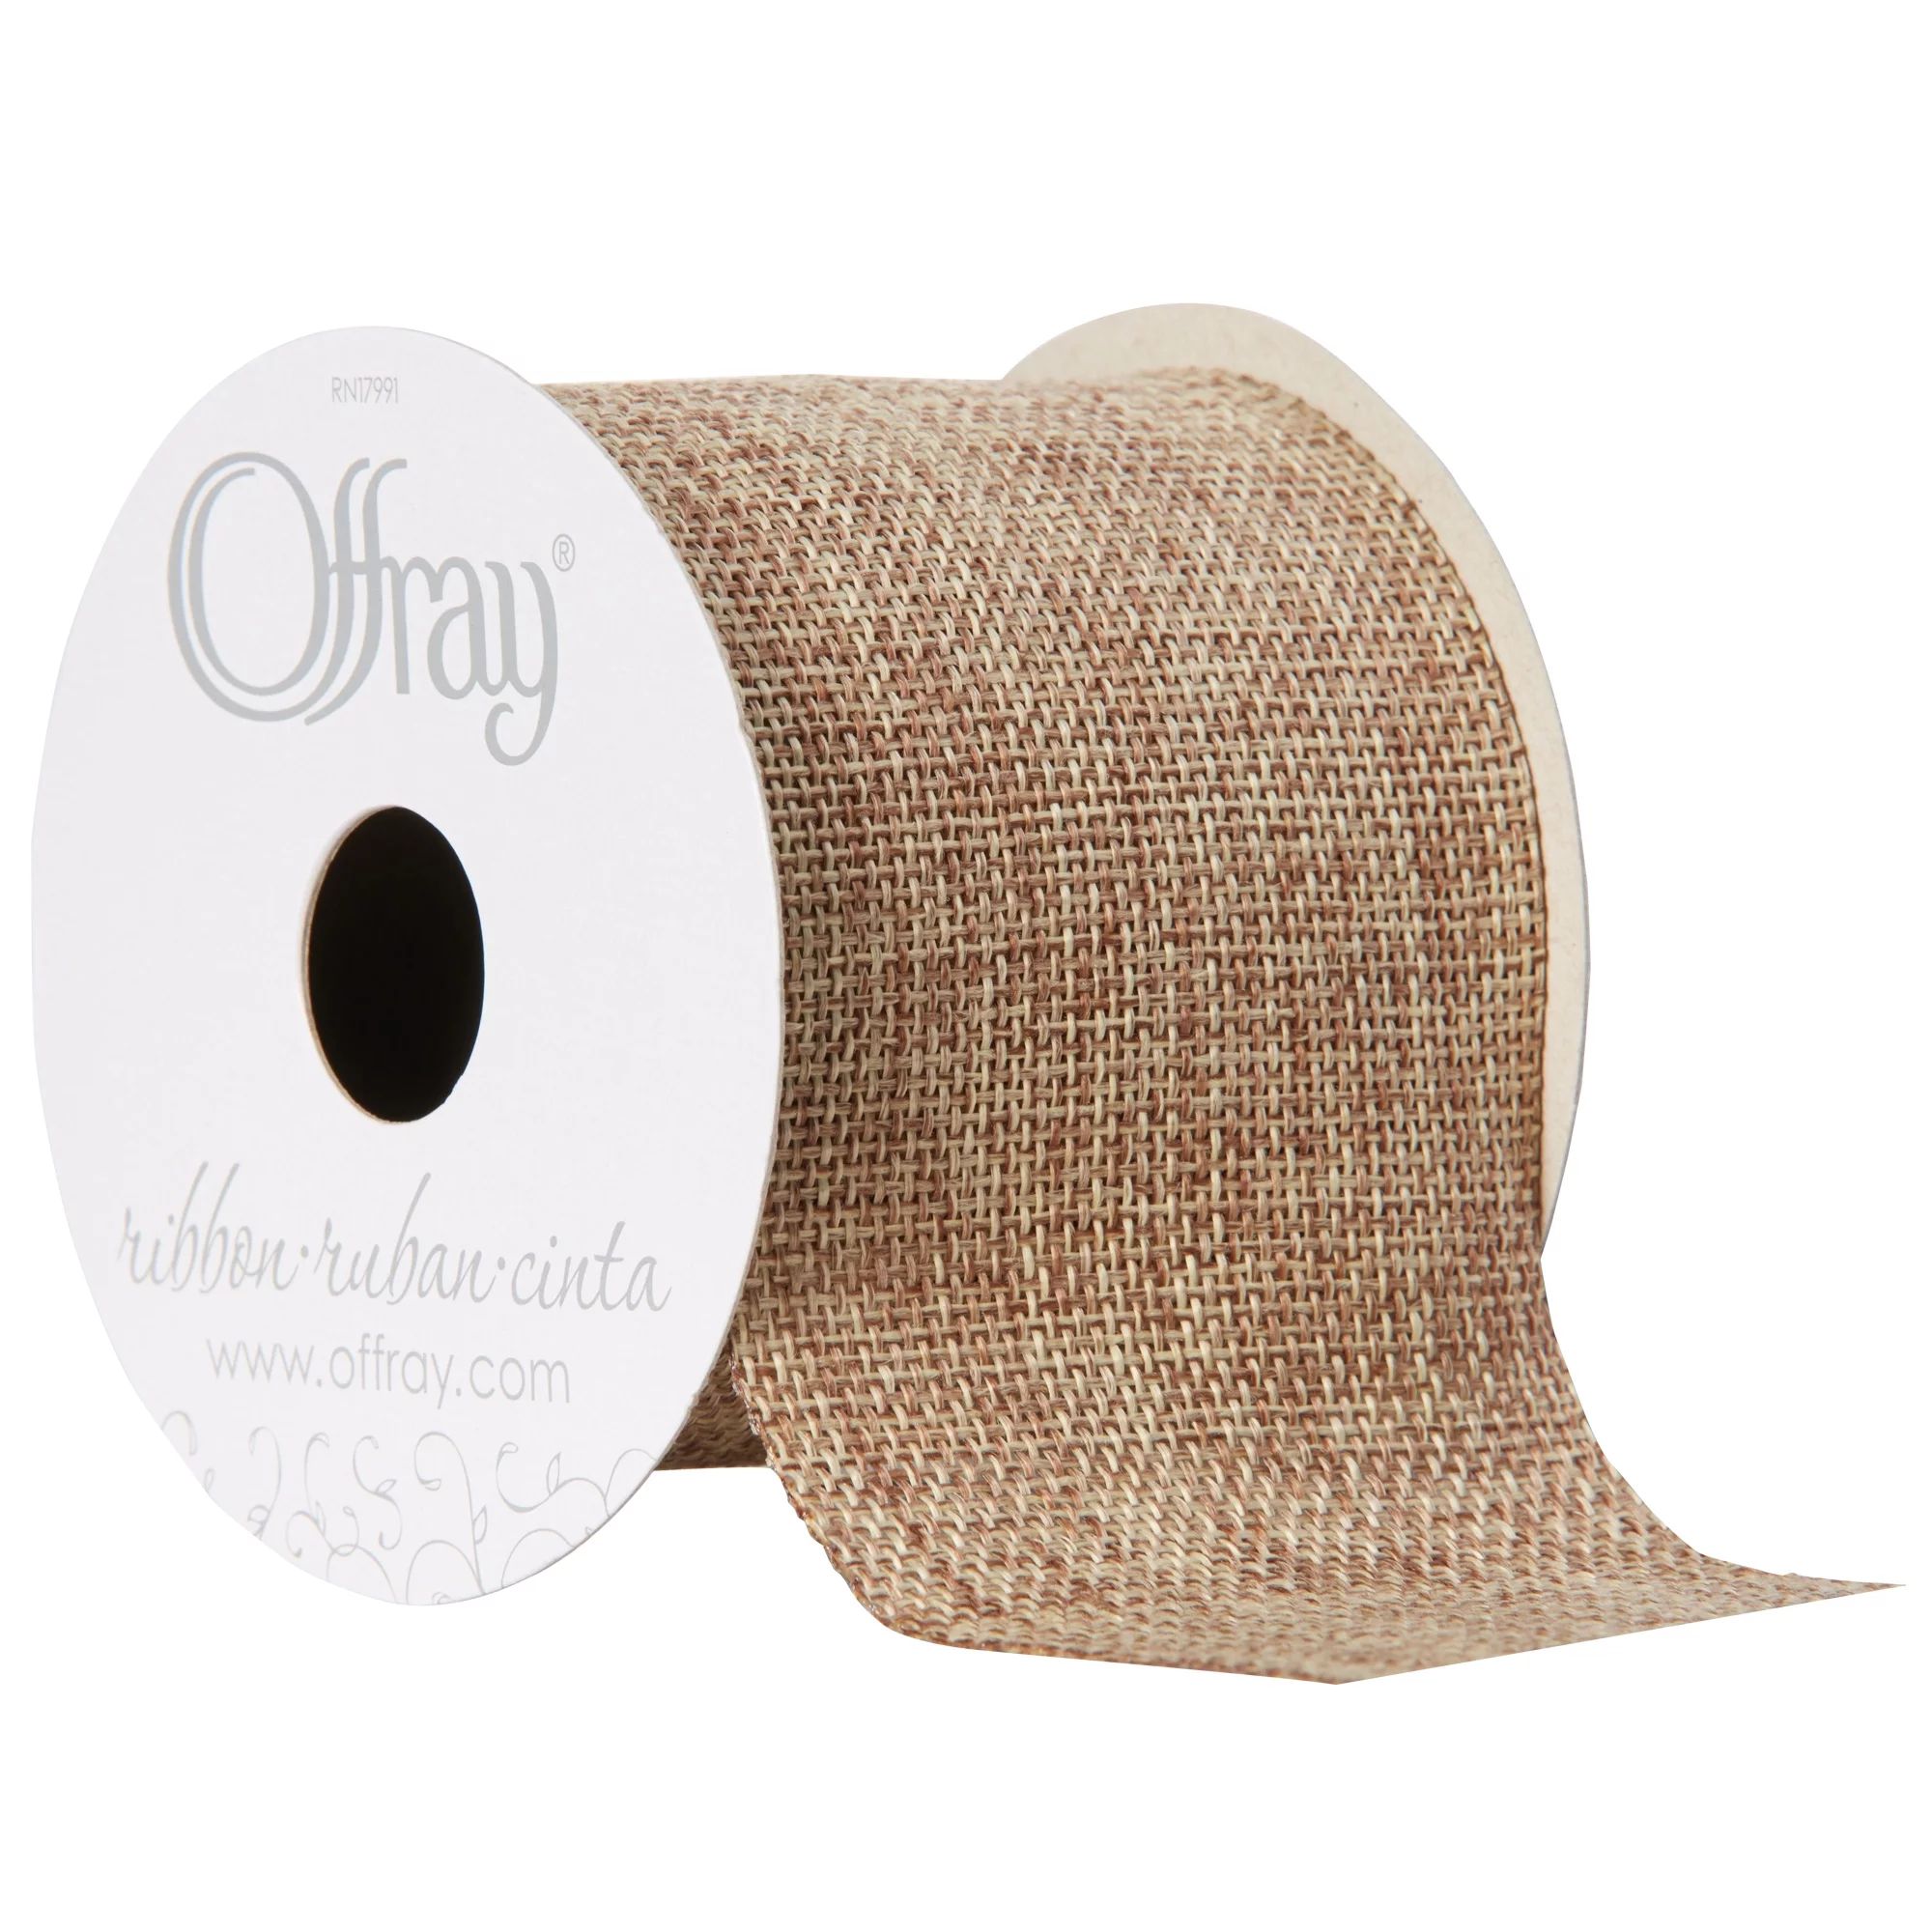 Offray Ribbon, Natural 2 1/2 inch Woven Burlap Woven Ribbon, 9 feet | Walmart (US)